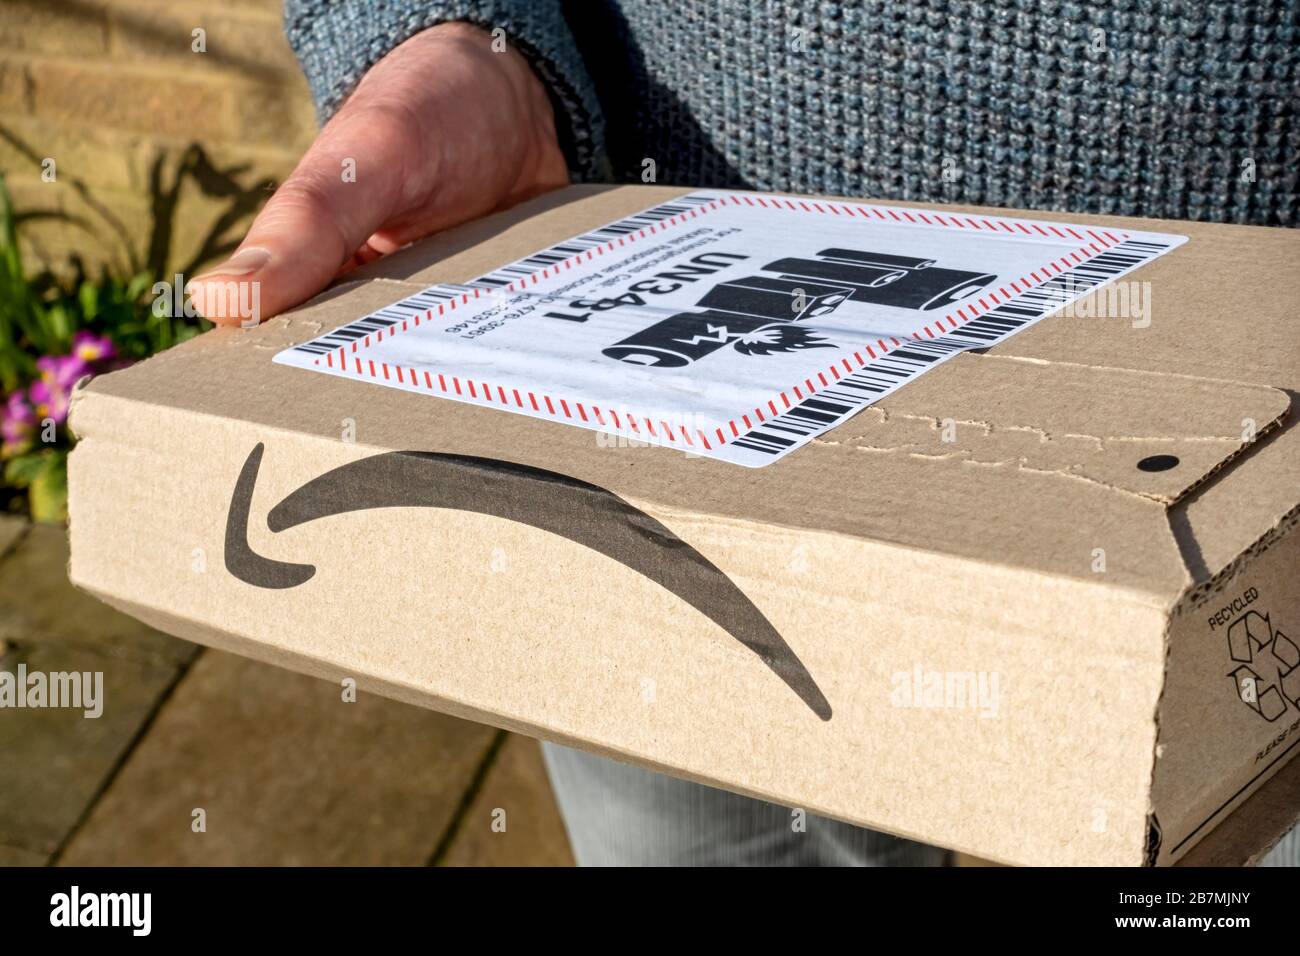 Gros plan de la personne homme transportant la livraison en ligne emballage  Amazon livraison avec batterie lithium-ion étiquette d'avertissement  Angleterre Royaume-Uni Photo Stock - Alamy